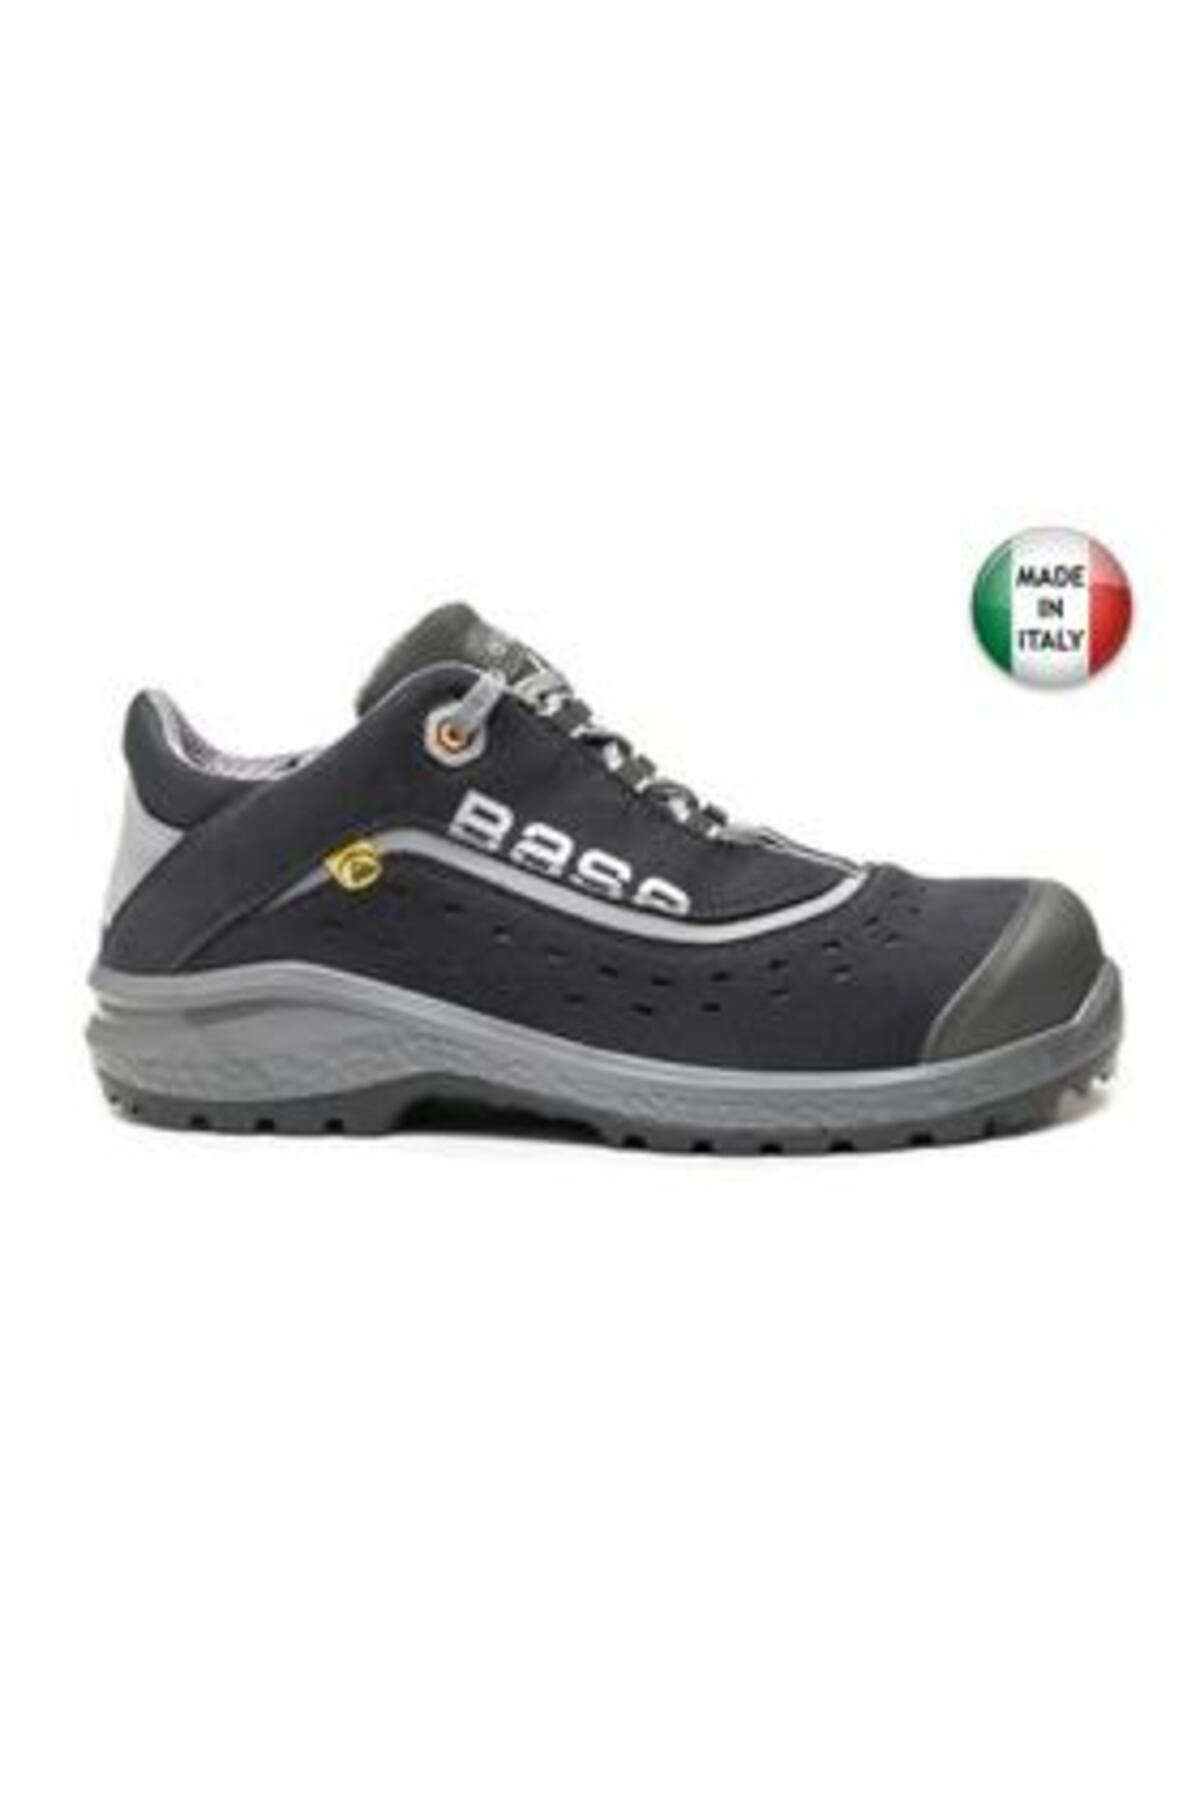 Base İtalyan İş Güvenlik Ayakkabısı B0886 Be-Style S1P SRC ESD